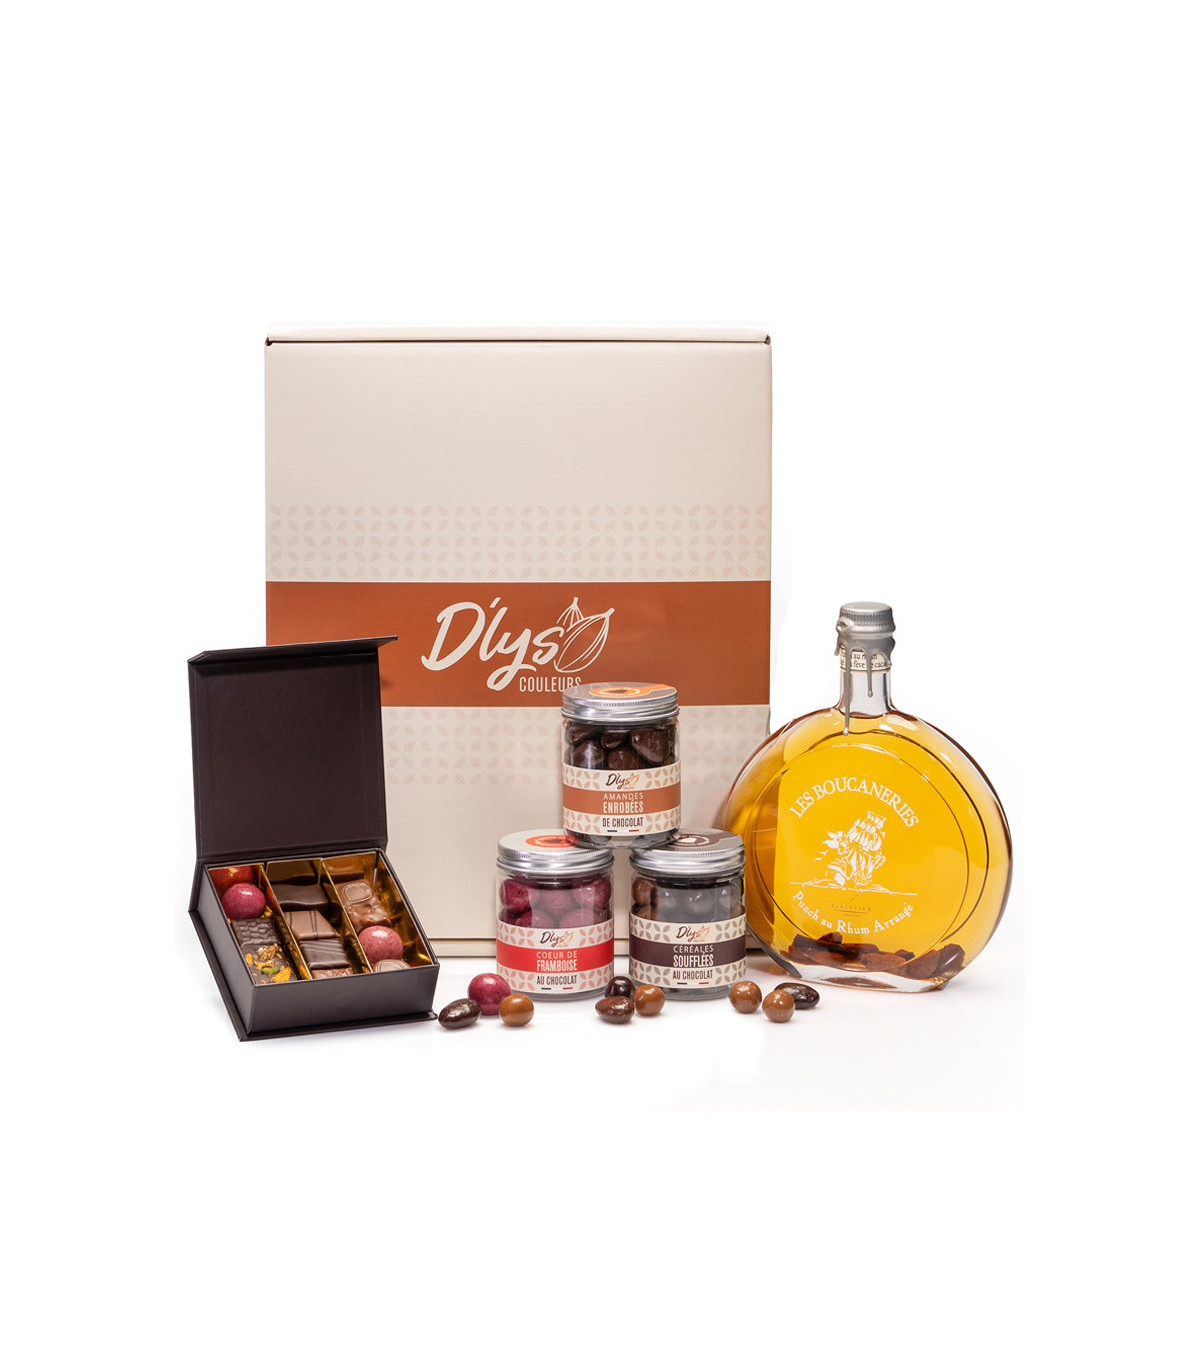 Coffret chocolat et whisky - Boutique de chocolat D'lys couleurs